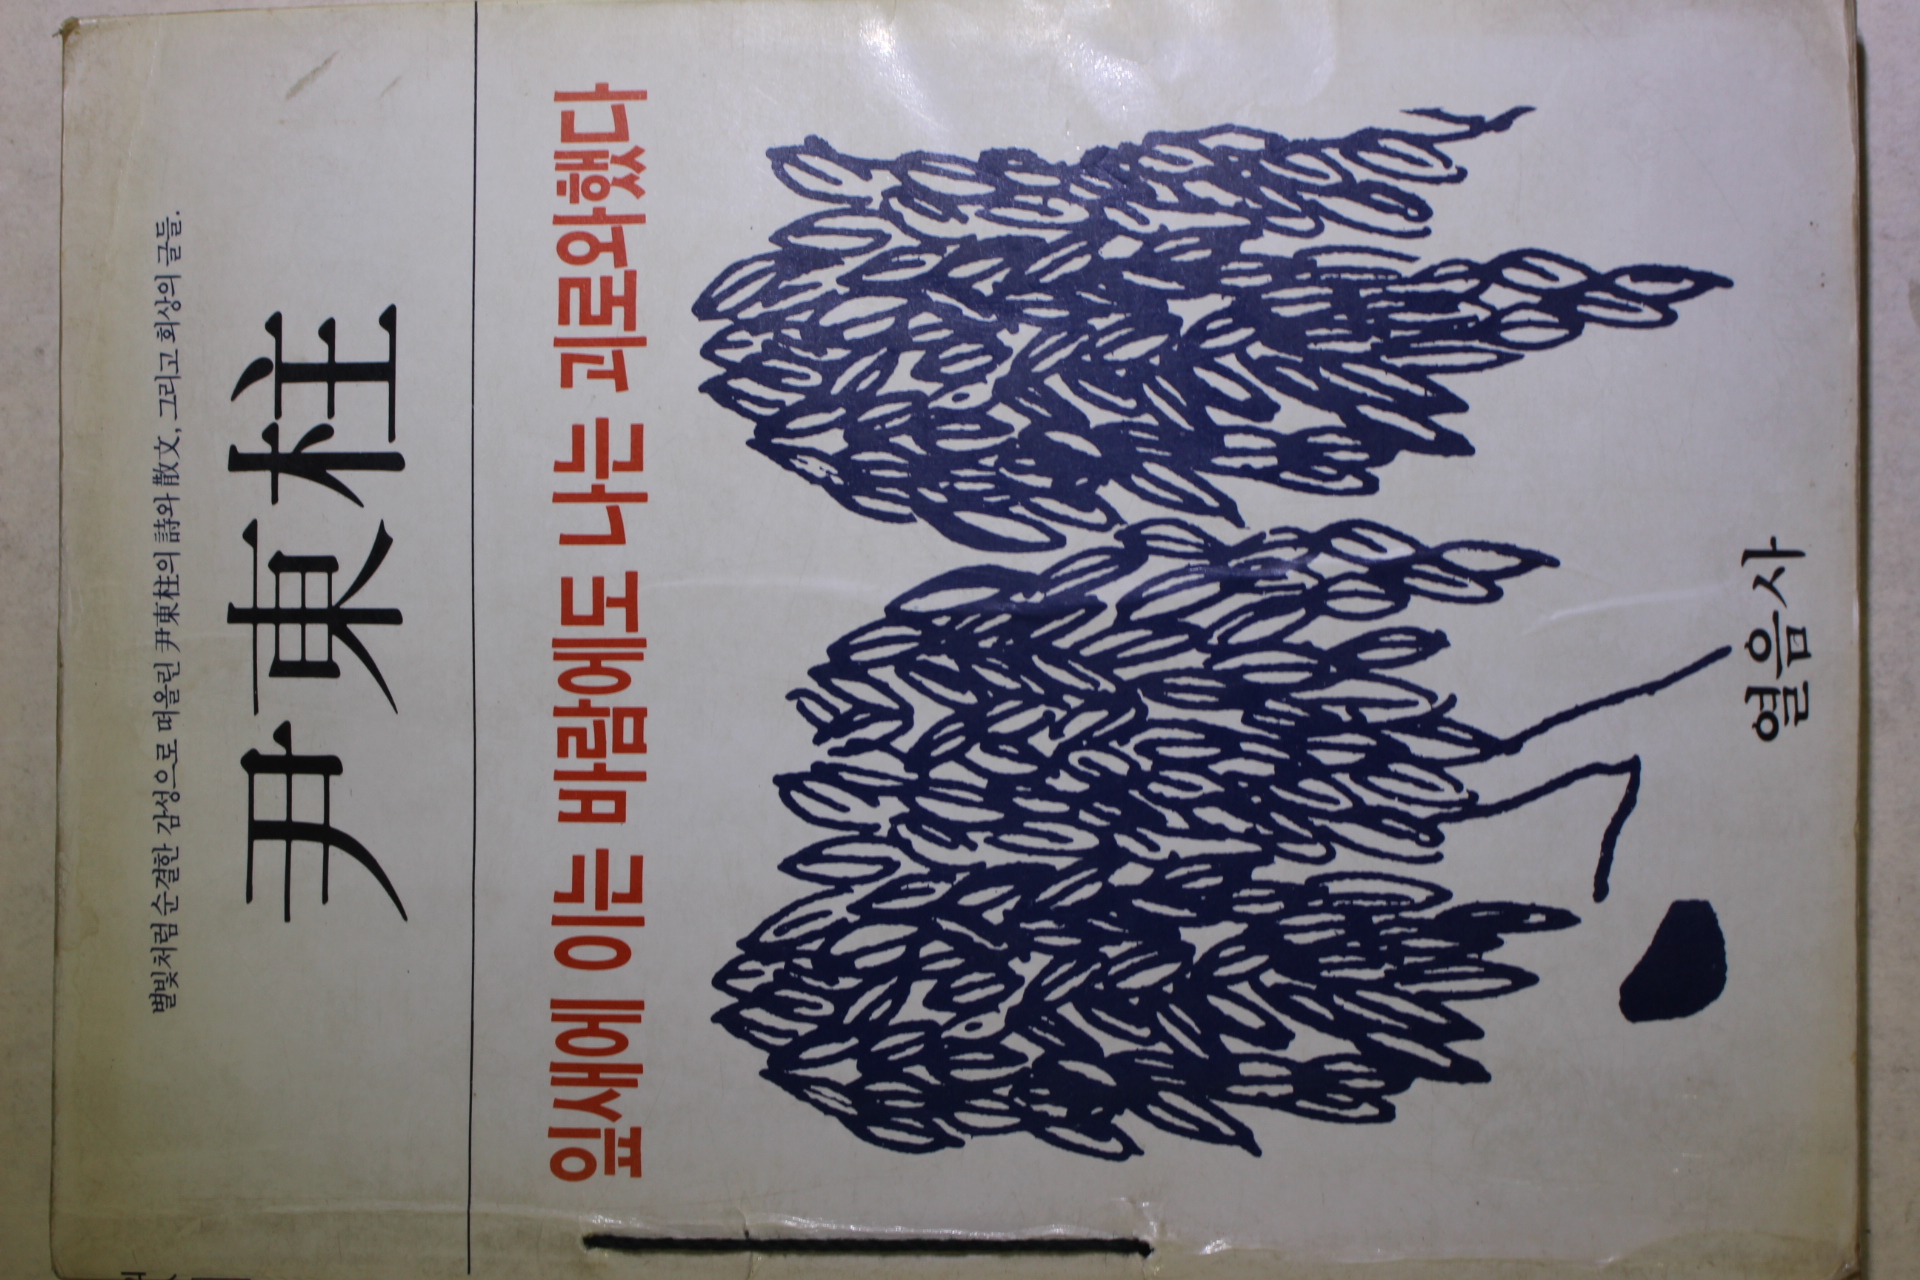 1984년 윤동주(尹東柱) 잎새에 이는 바람에도 나는 괴로와했다